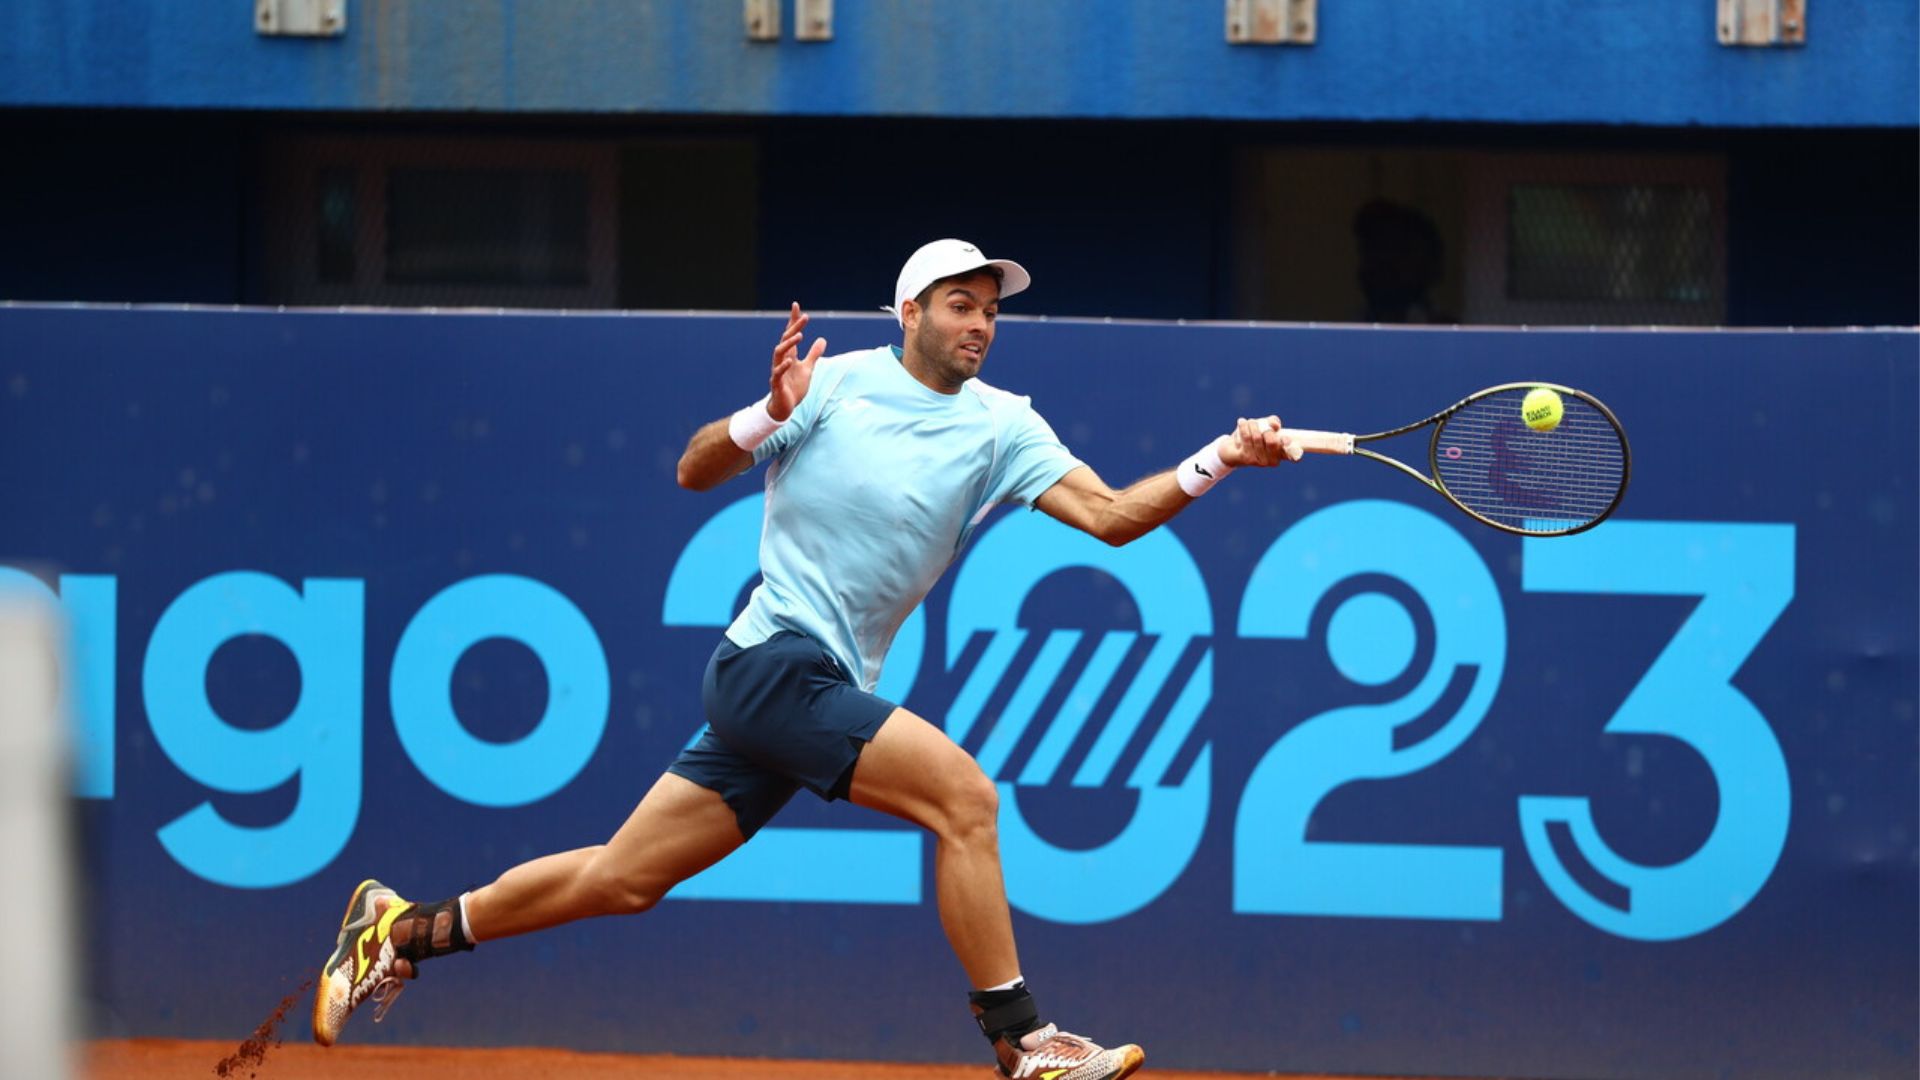 Tennis: Facundo Díaz Acosta struggles more than expected